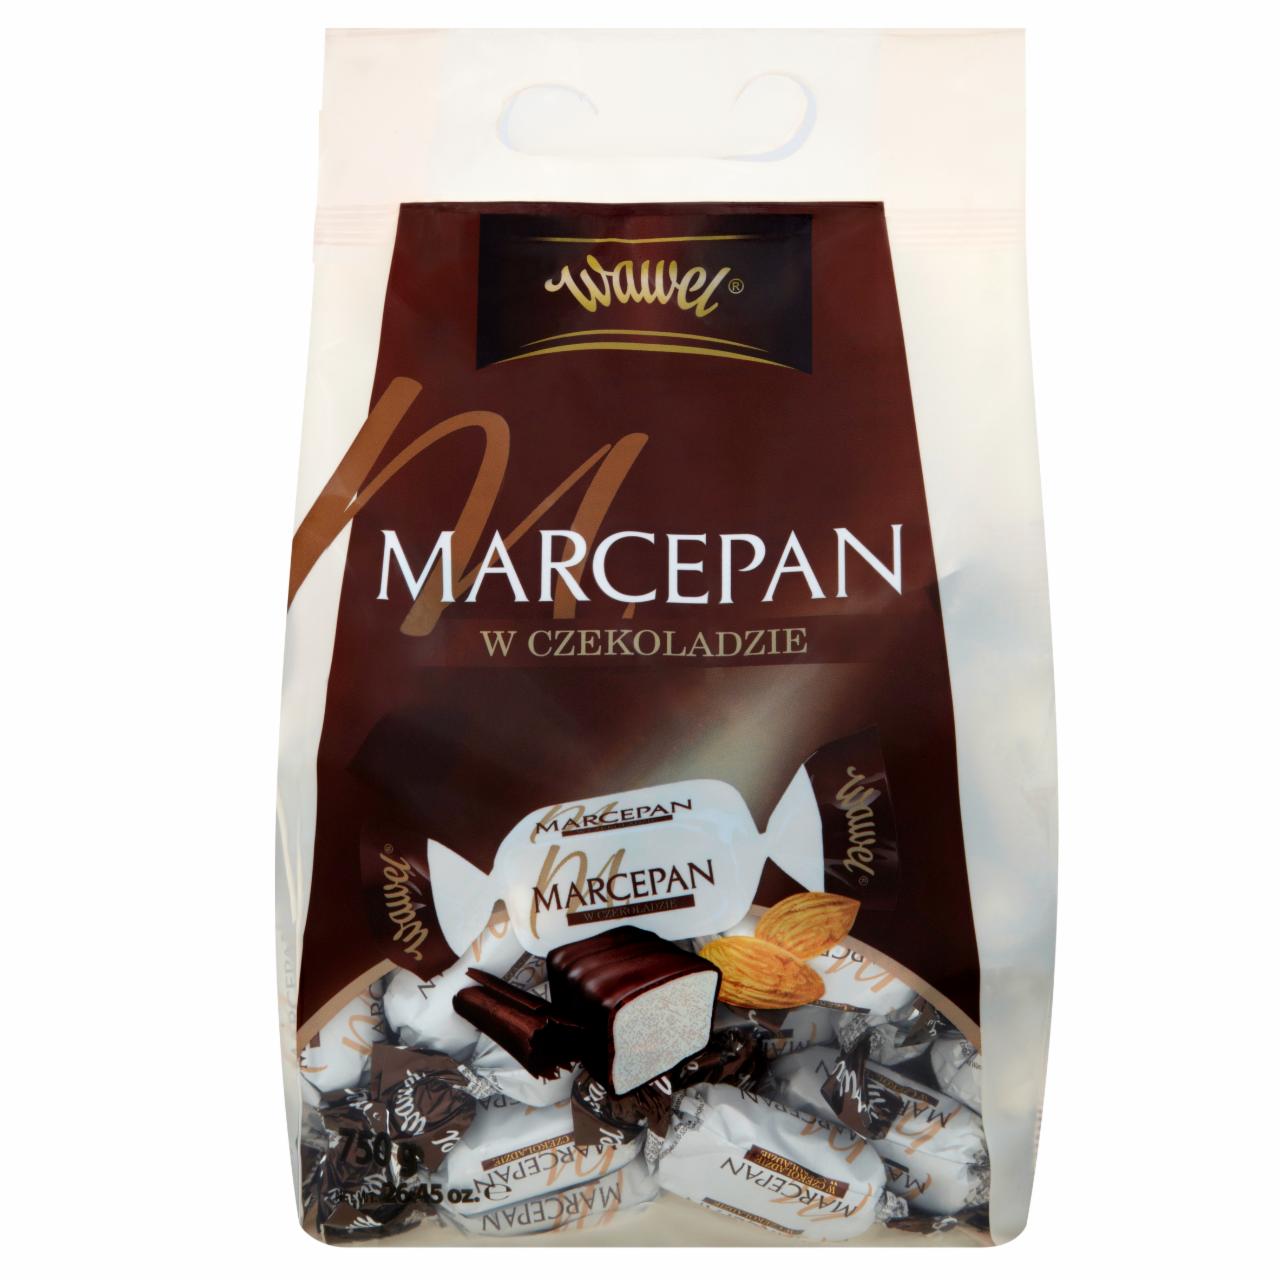 Zdjęcia - Wawel Marcepan w czekoladzie 750 g